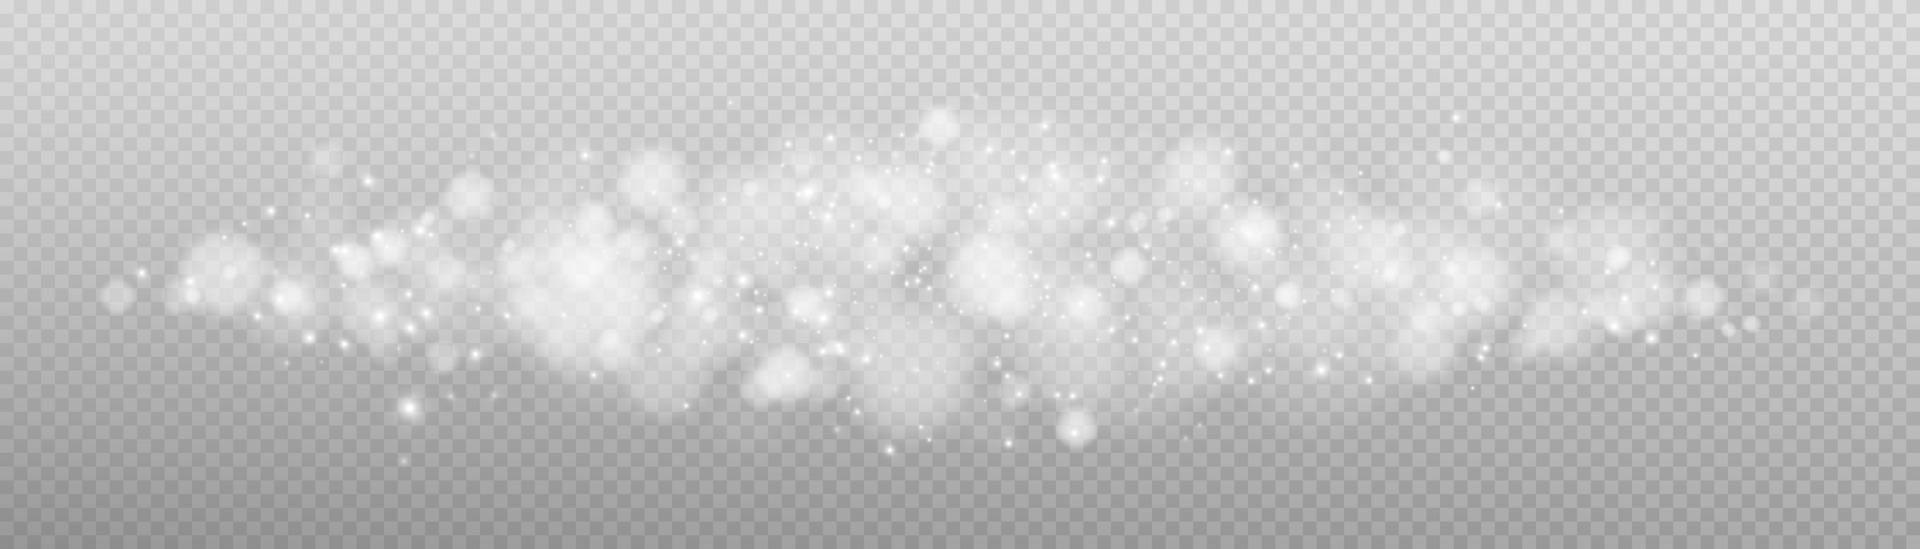 vit bokeh lampor med lysande partiklar isolerat. vektor